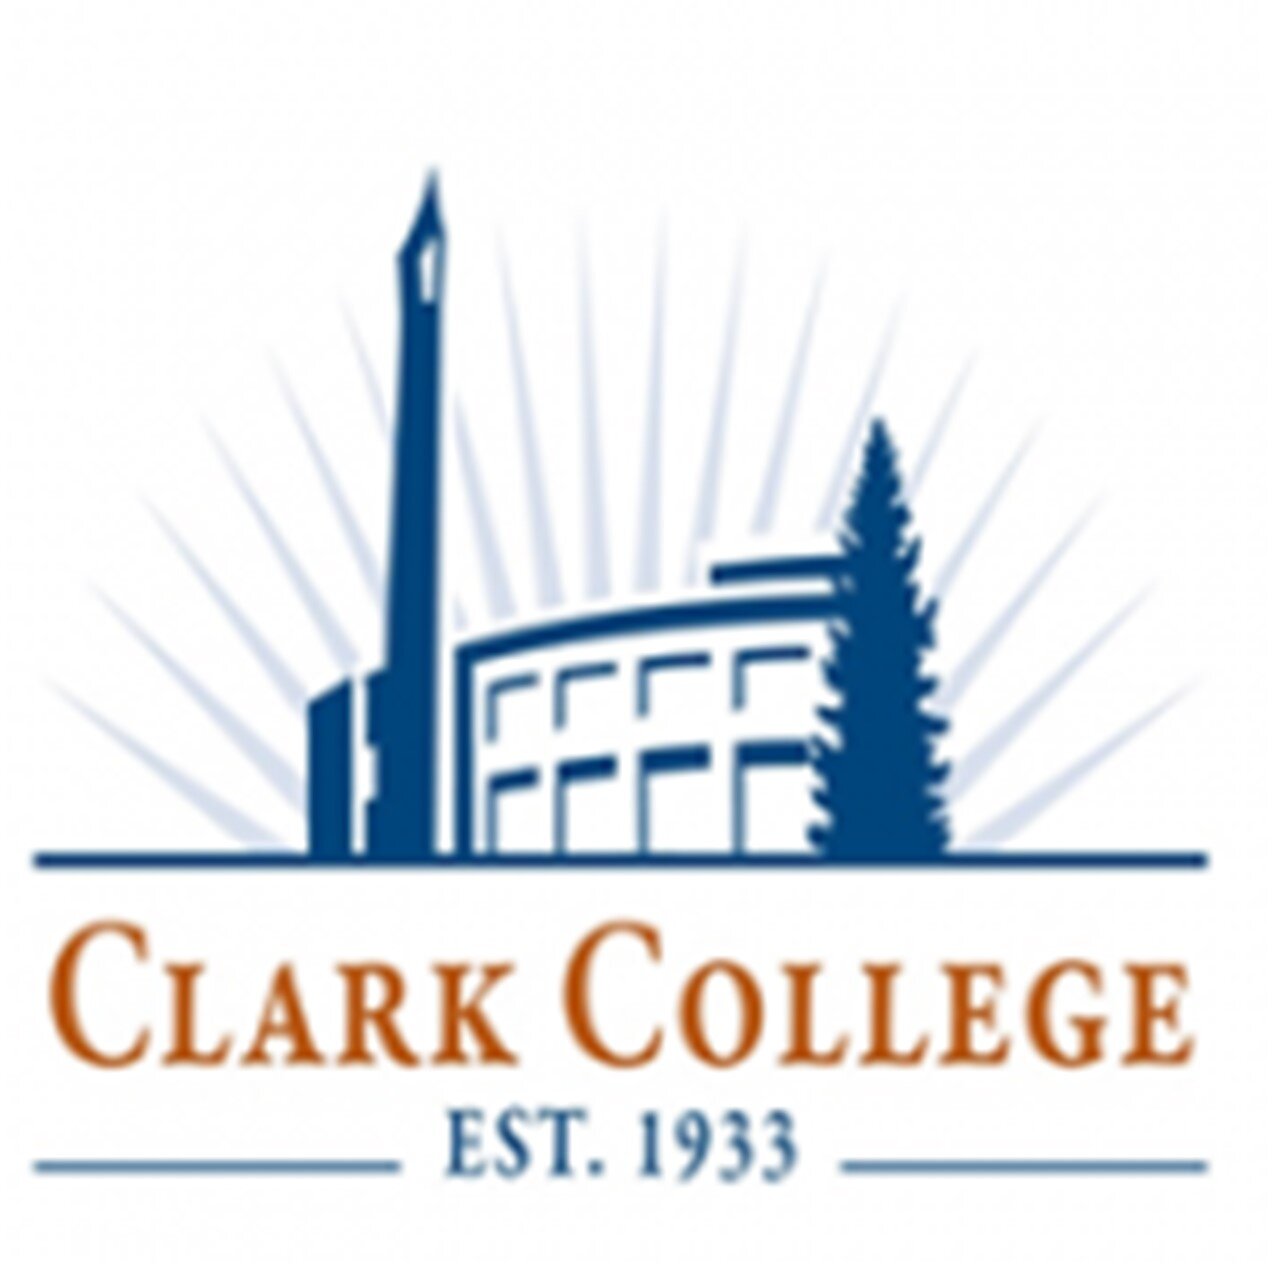   Clark College | Queer Penguins &amp; Allies Club  